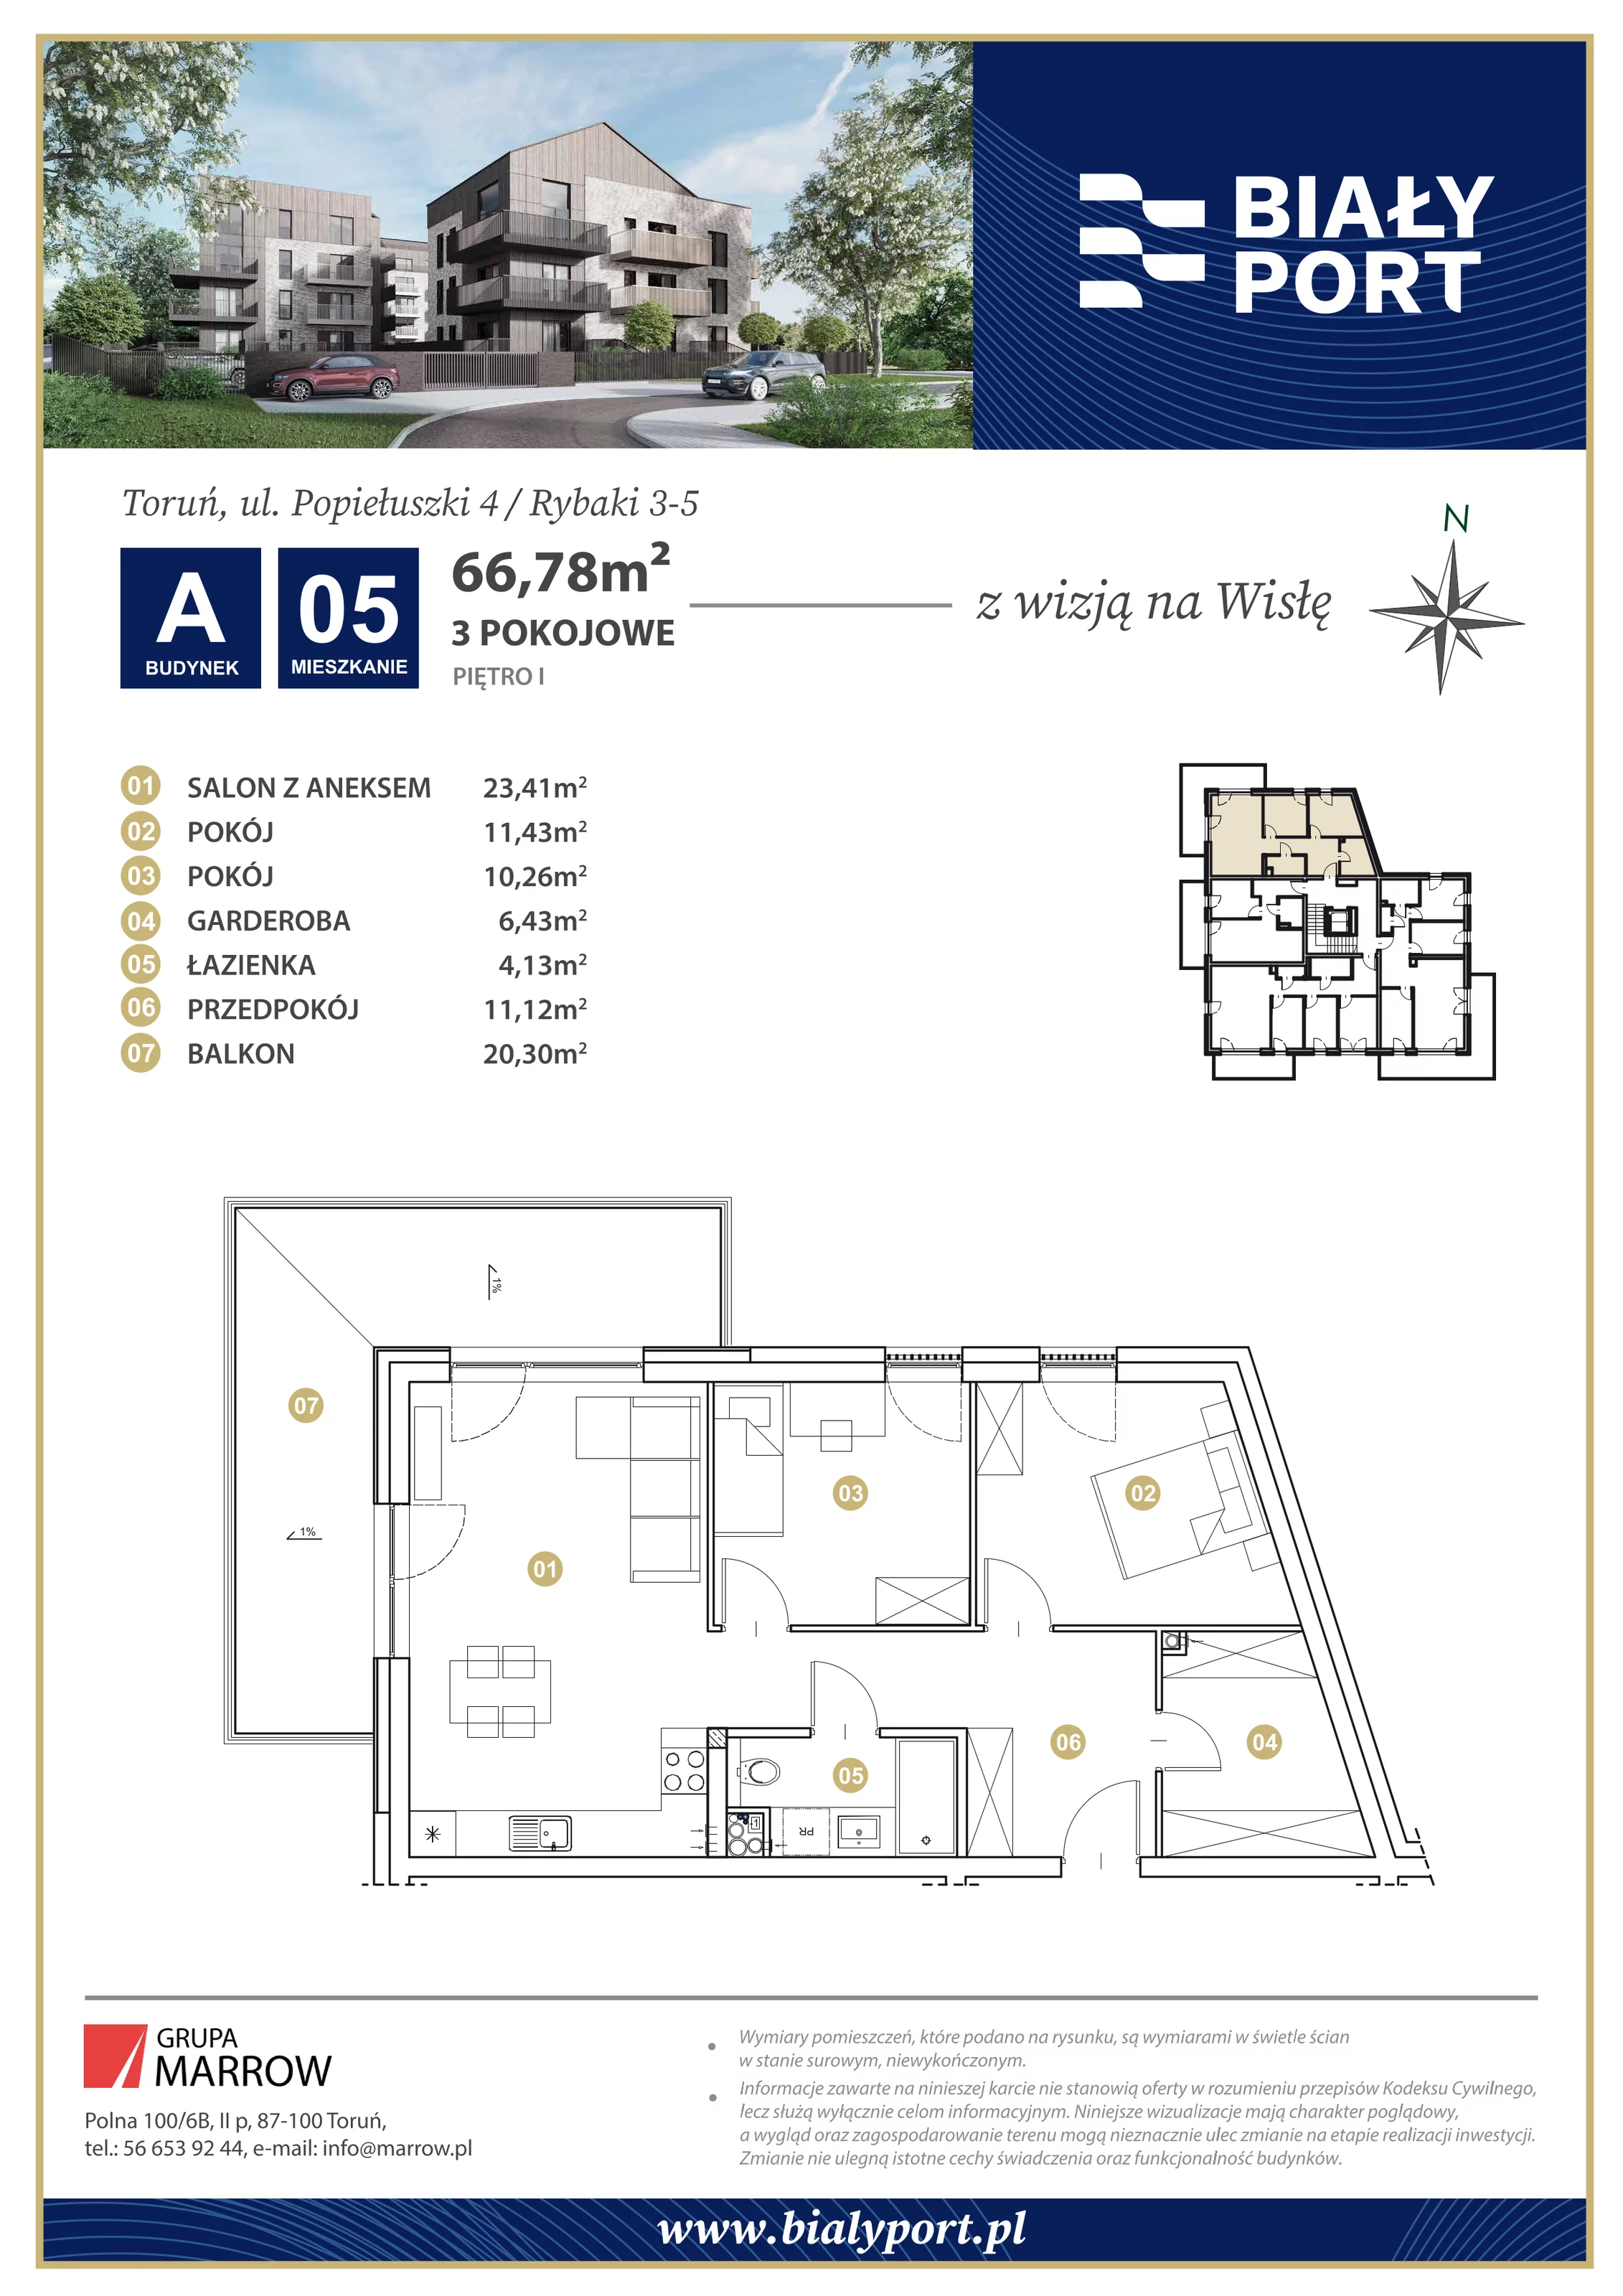 Mieszkanie 66,78 m², piętro 1, oferta nr 5, Biały Port, Toruń, Rybaki, ul. Popiełuszki 4